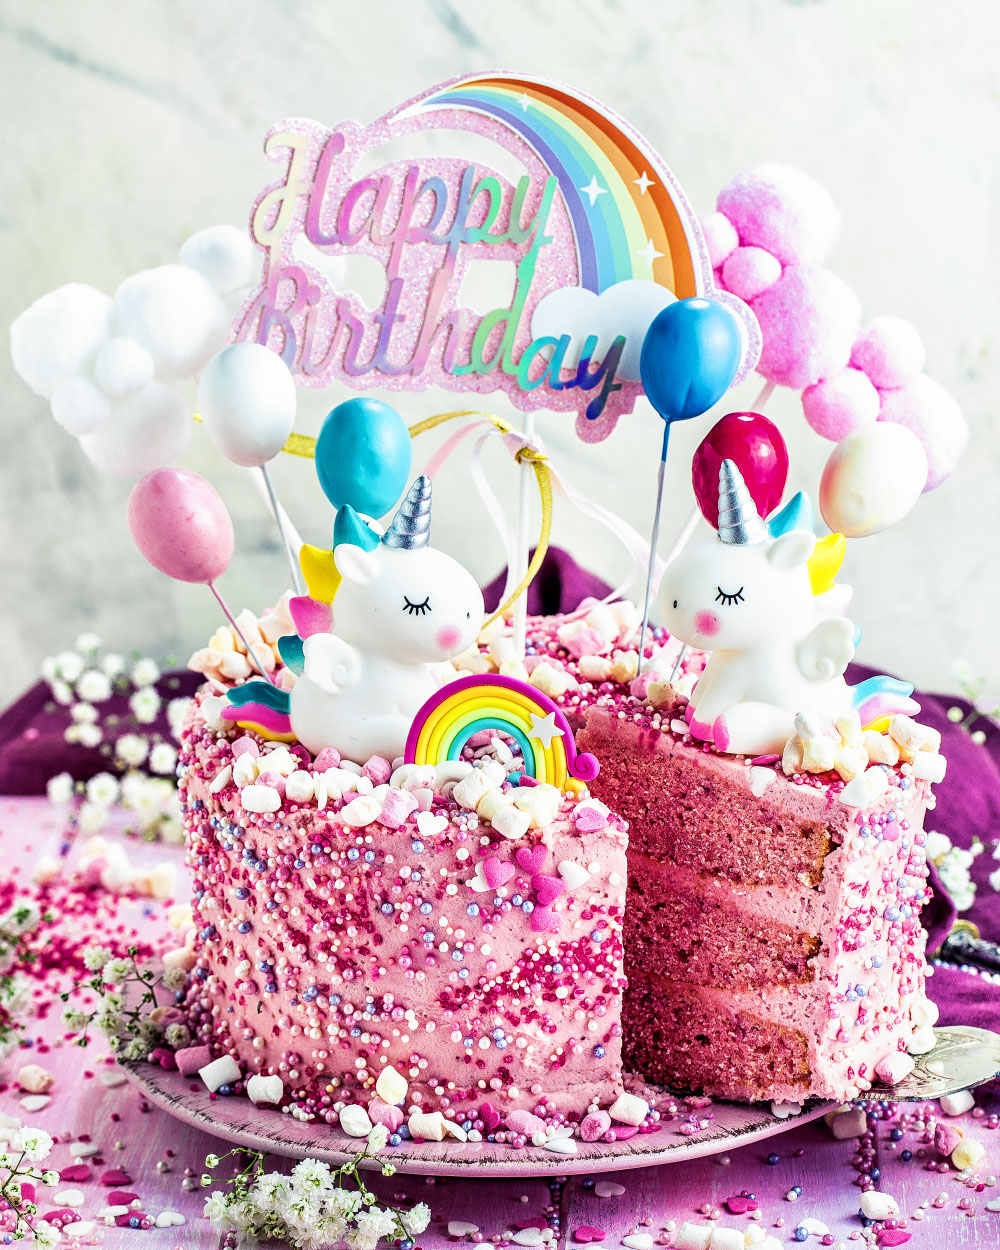 Einhorn-Torte - Einfaches Rezept Für Mädchen Geburtstagstorte ganzes Geburtstagskuchen Für 1 Jahr